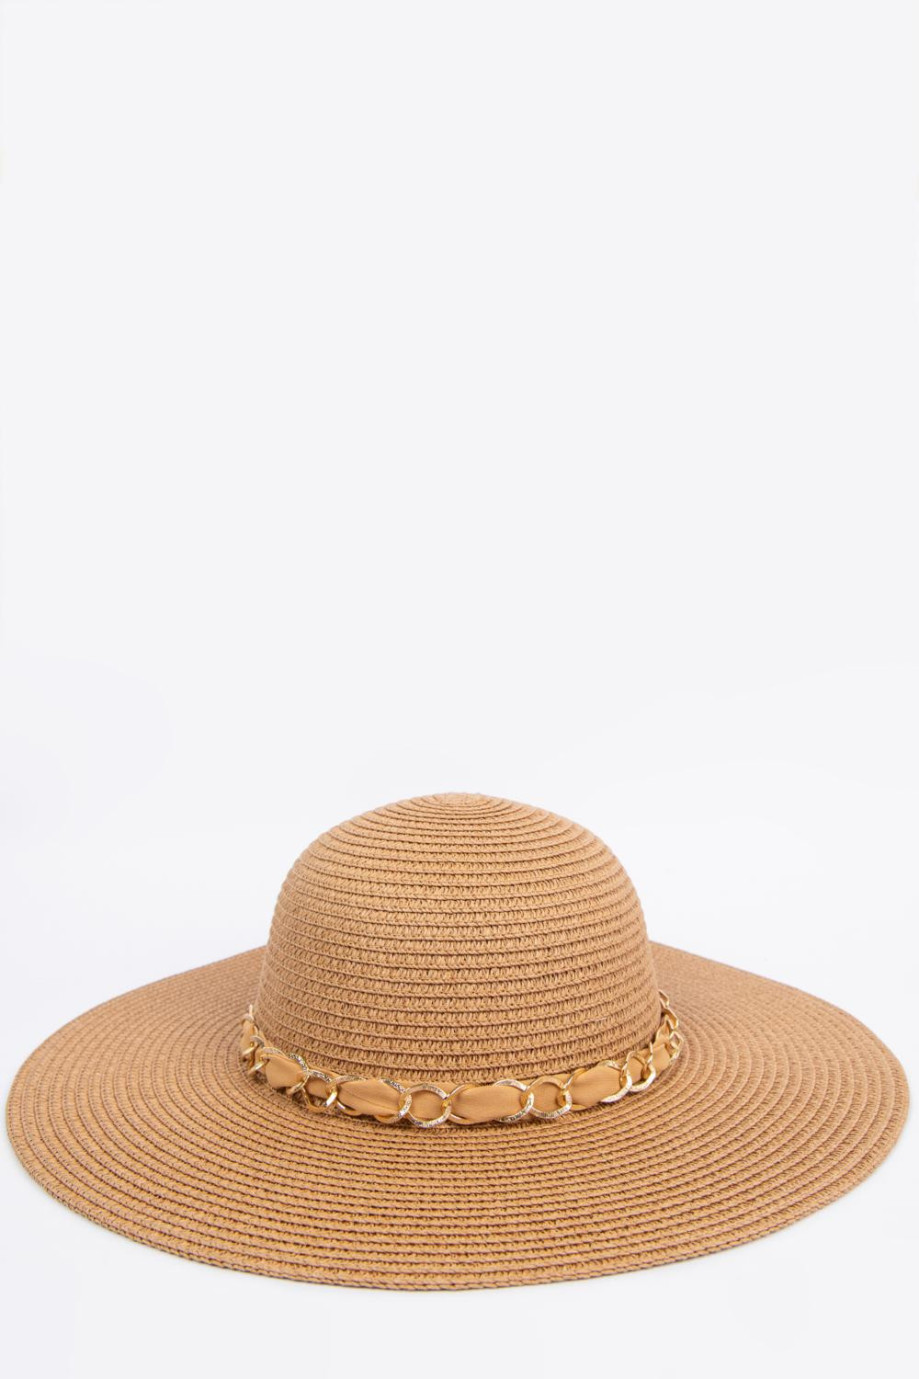 Sombrero kaky claro con moño y cadena decorativas